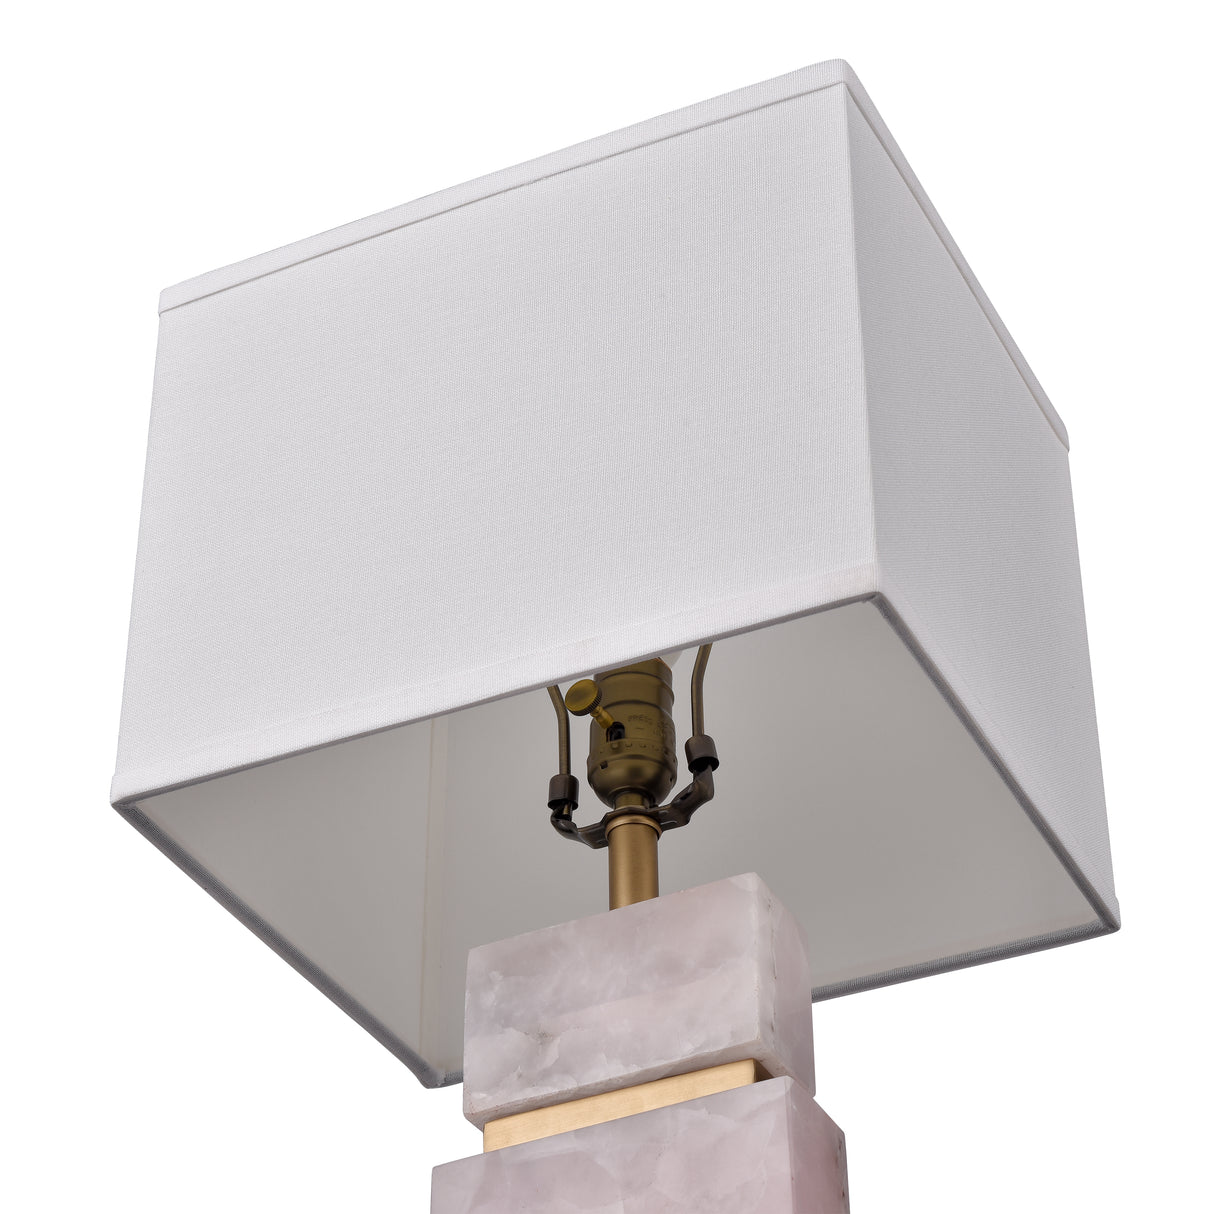 Elk H0019-10385 Alcott 21.5'' High 1-Light Table Lamp